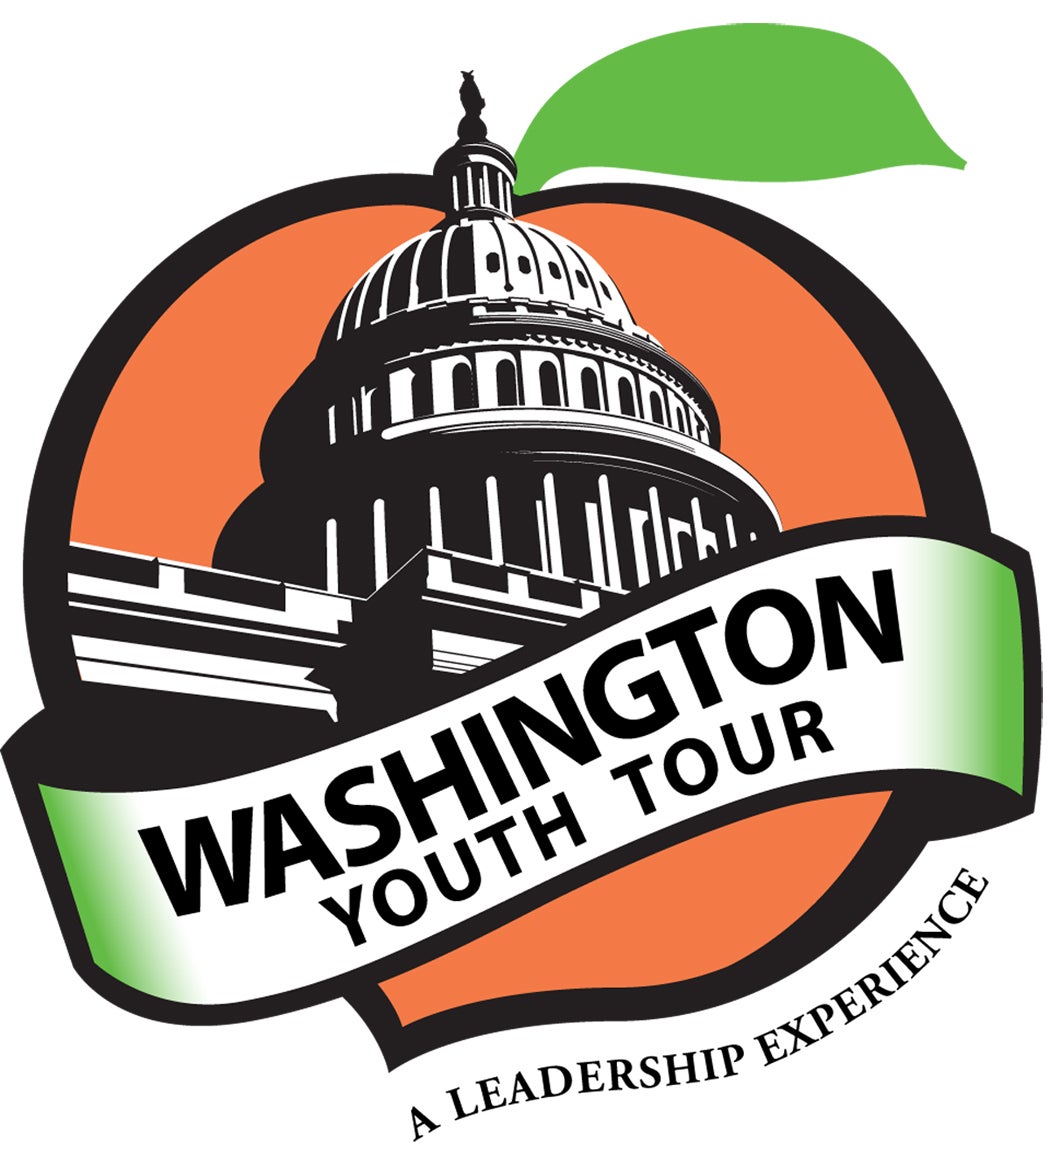 Washington Youth Tour Delegates